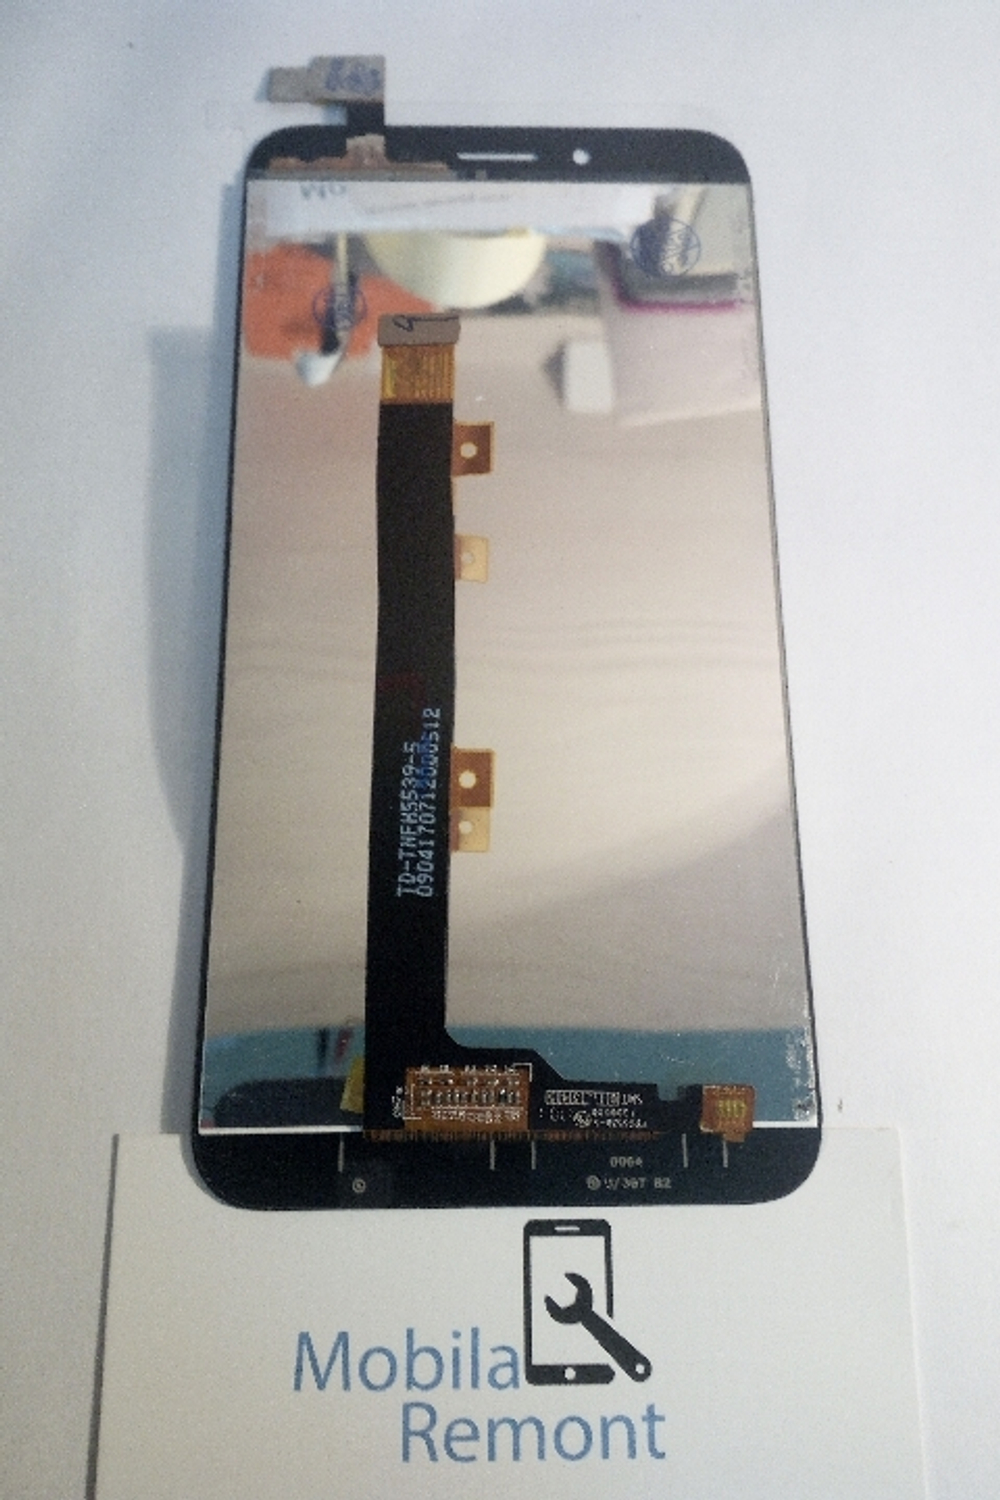 Дисплей для Asus ZC553KL (ZenFone 3 Max) в сборе с тачскрином Черный